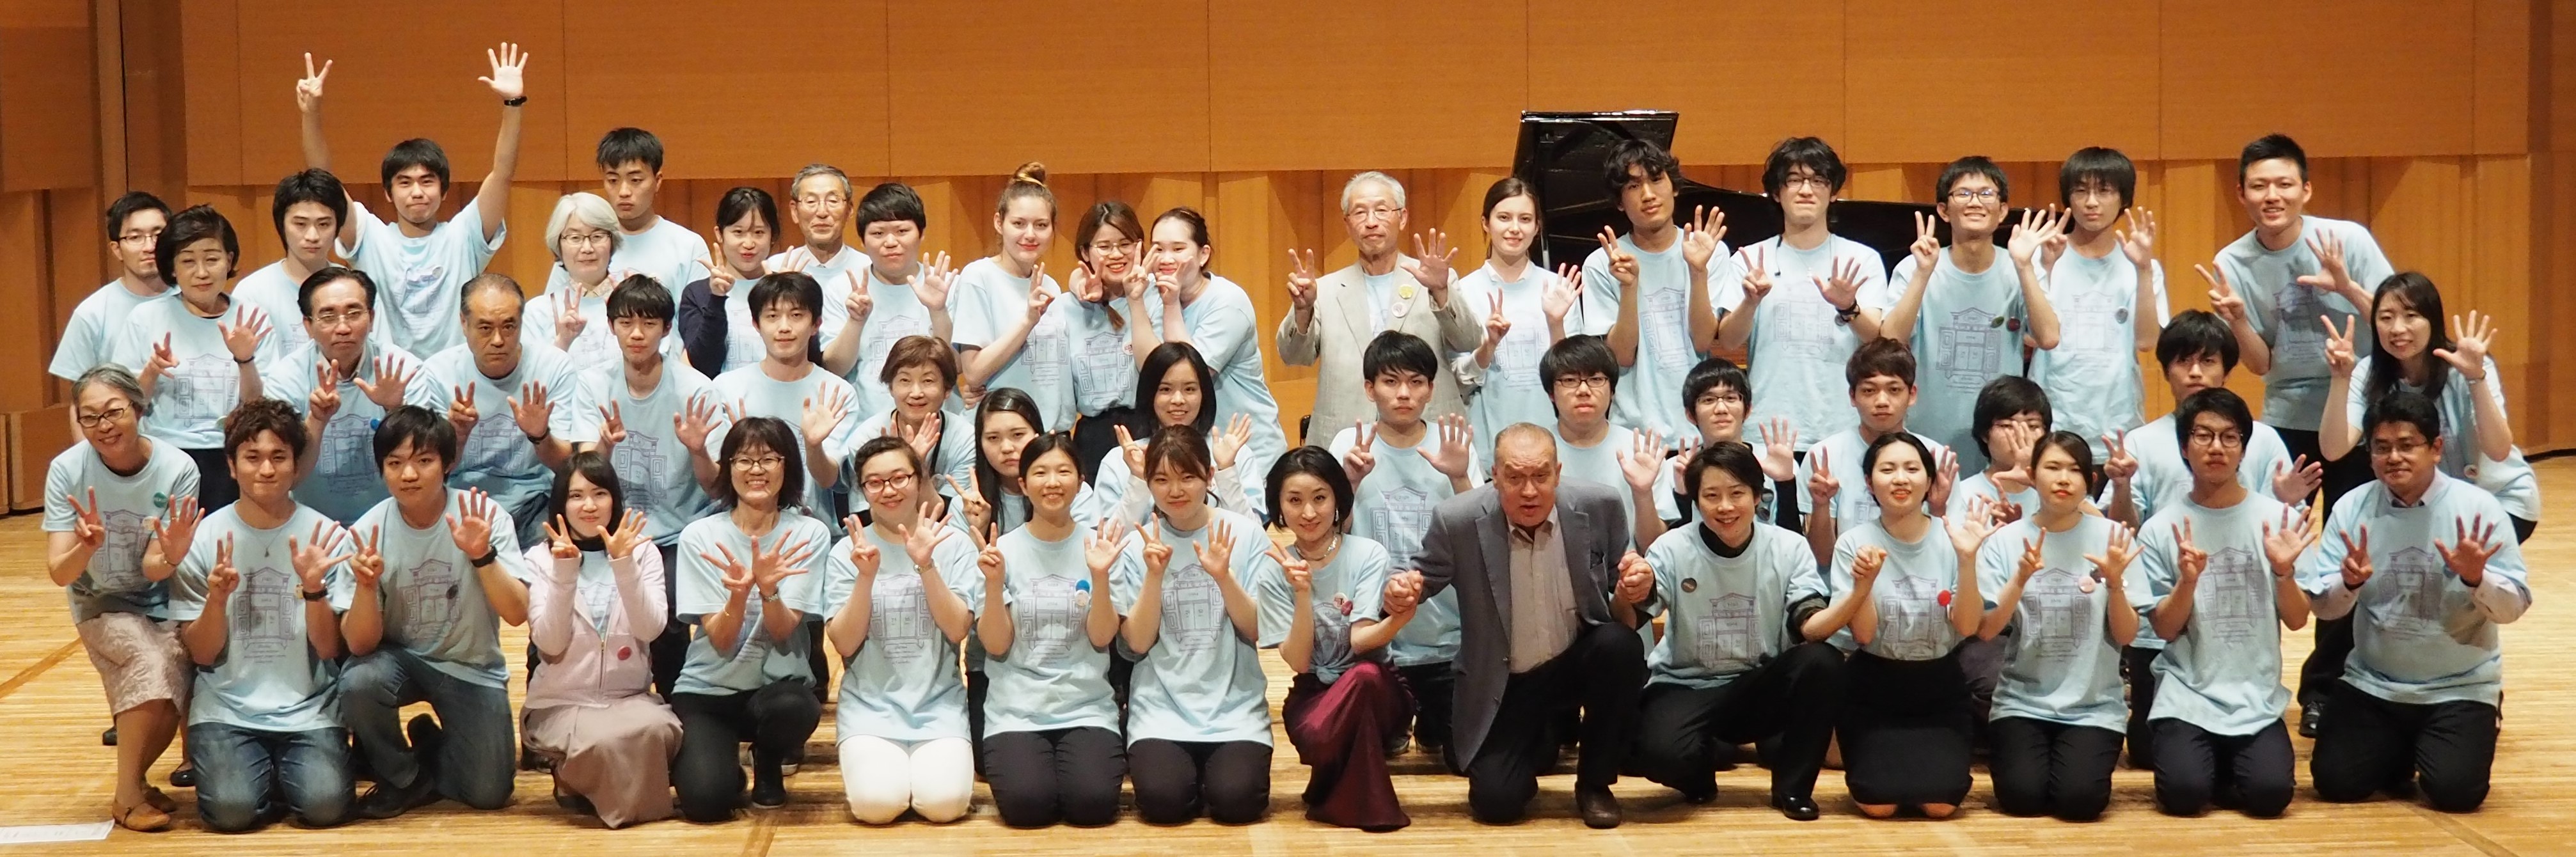 ロシア通の国際人育成をめざして日本で初めて本校が取り組みました